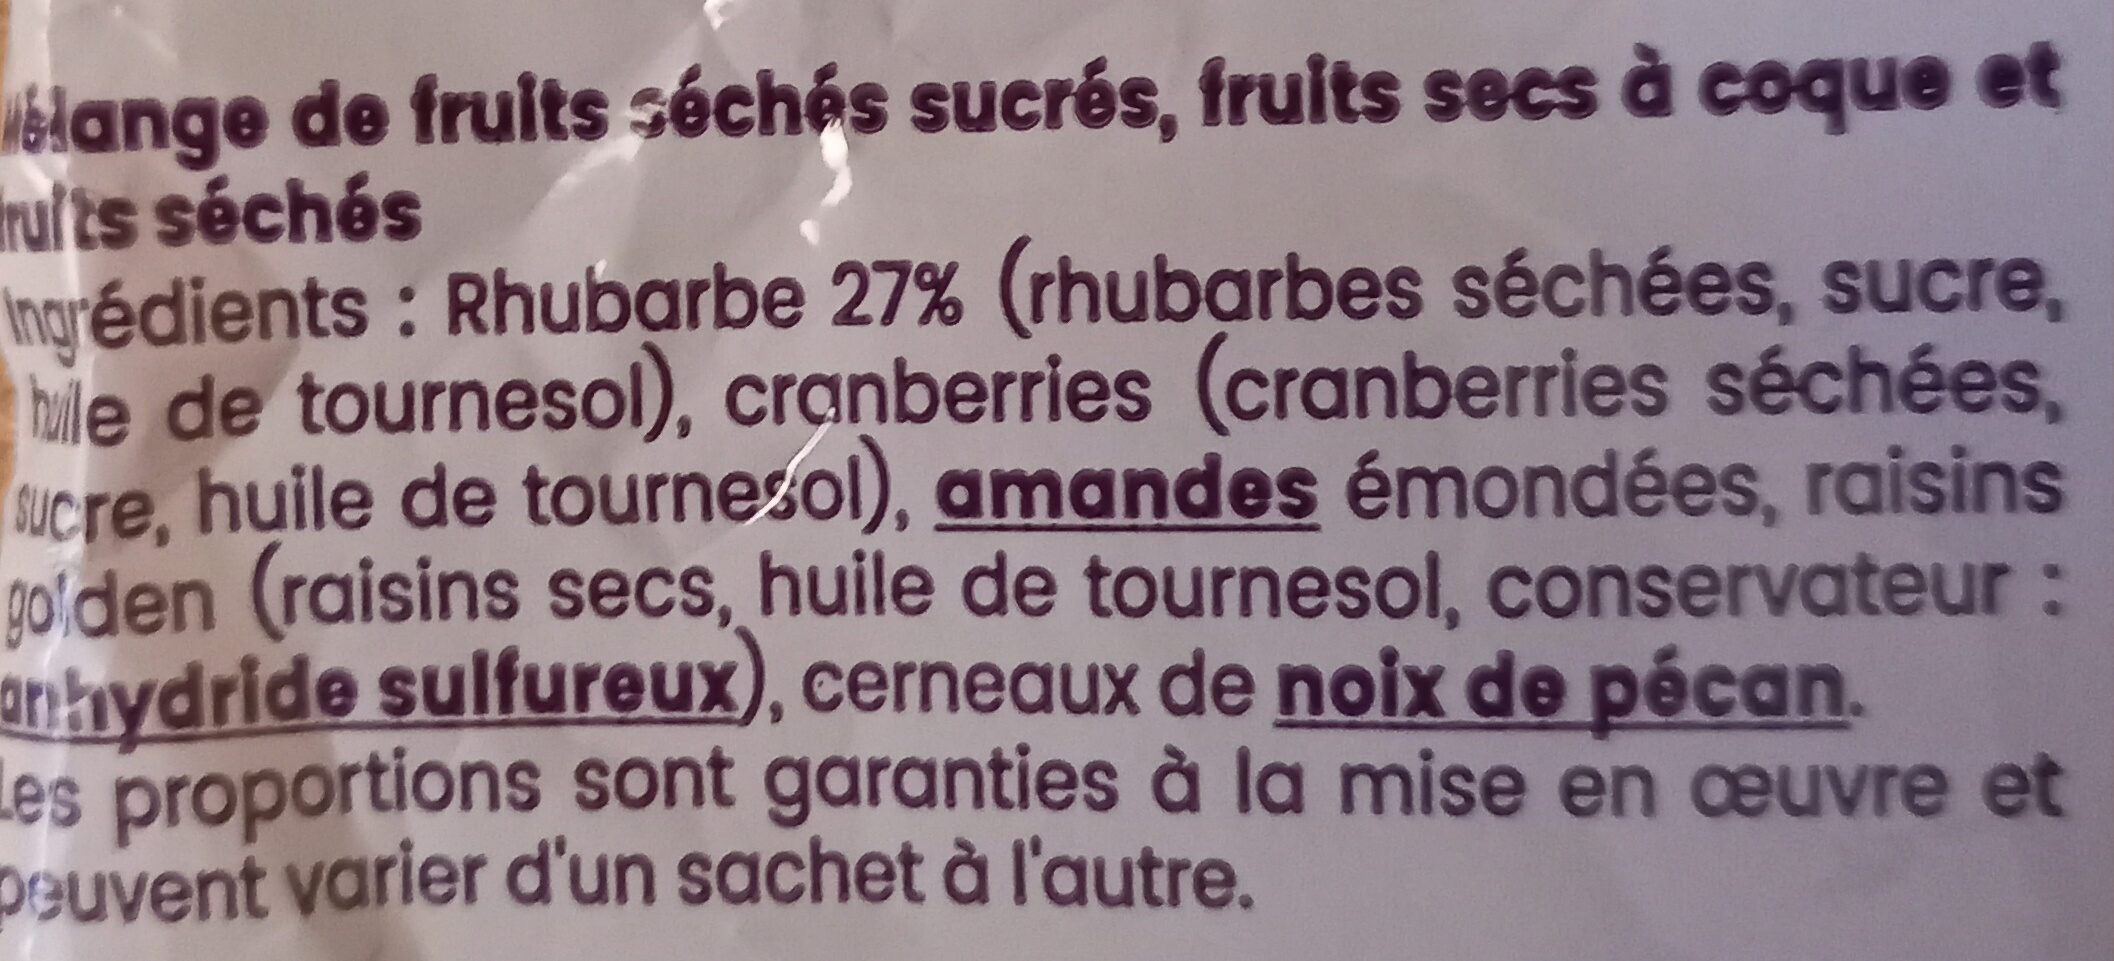 Mix rhubarbe - Ingredienser - fr